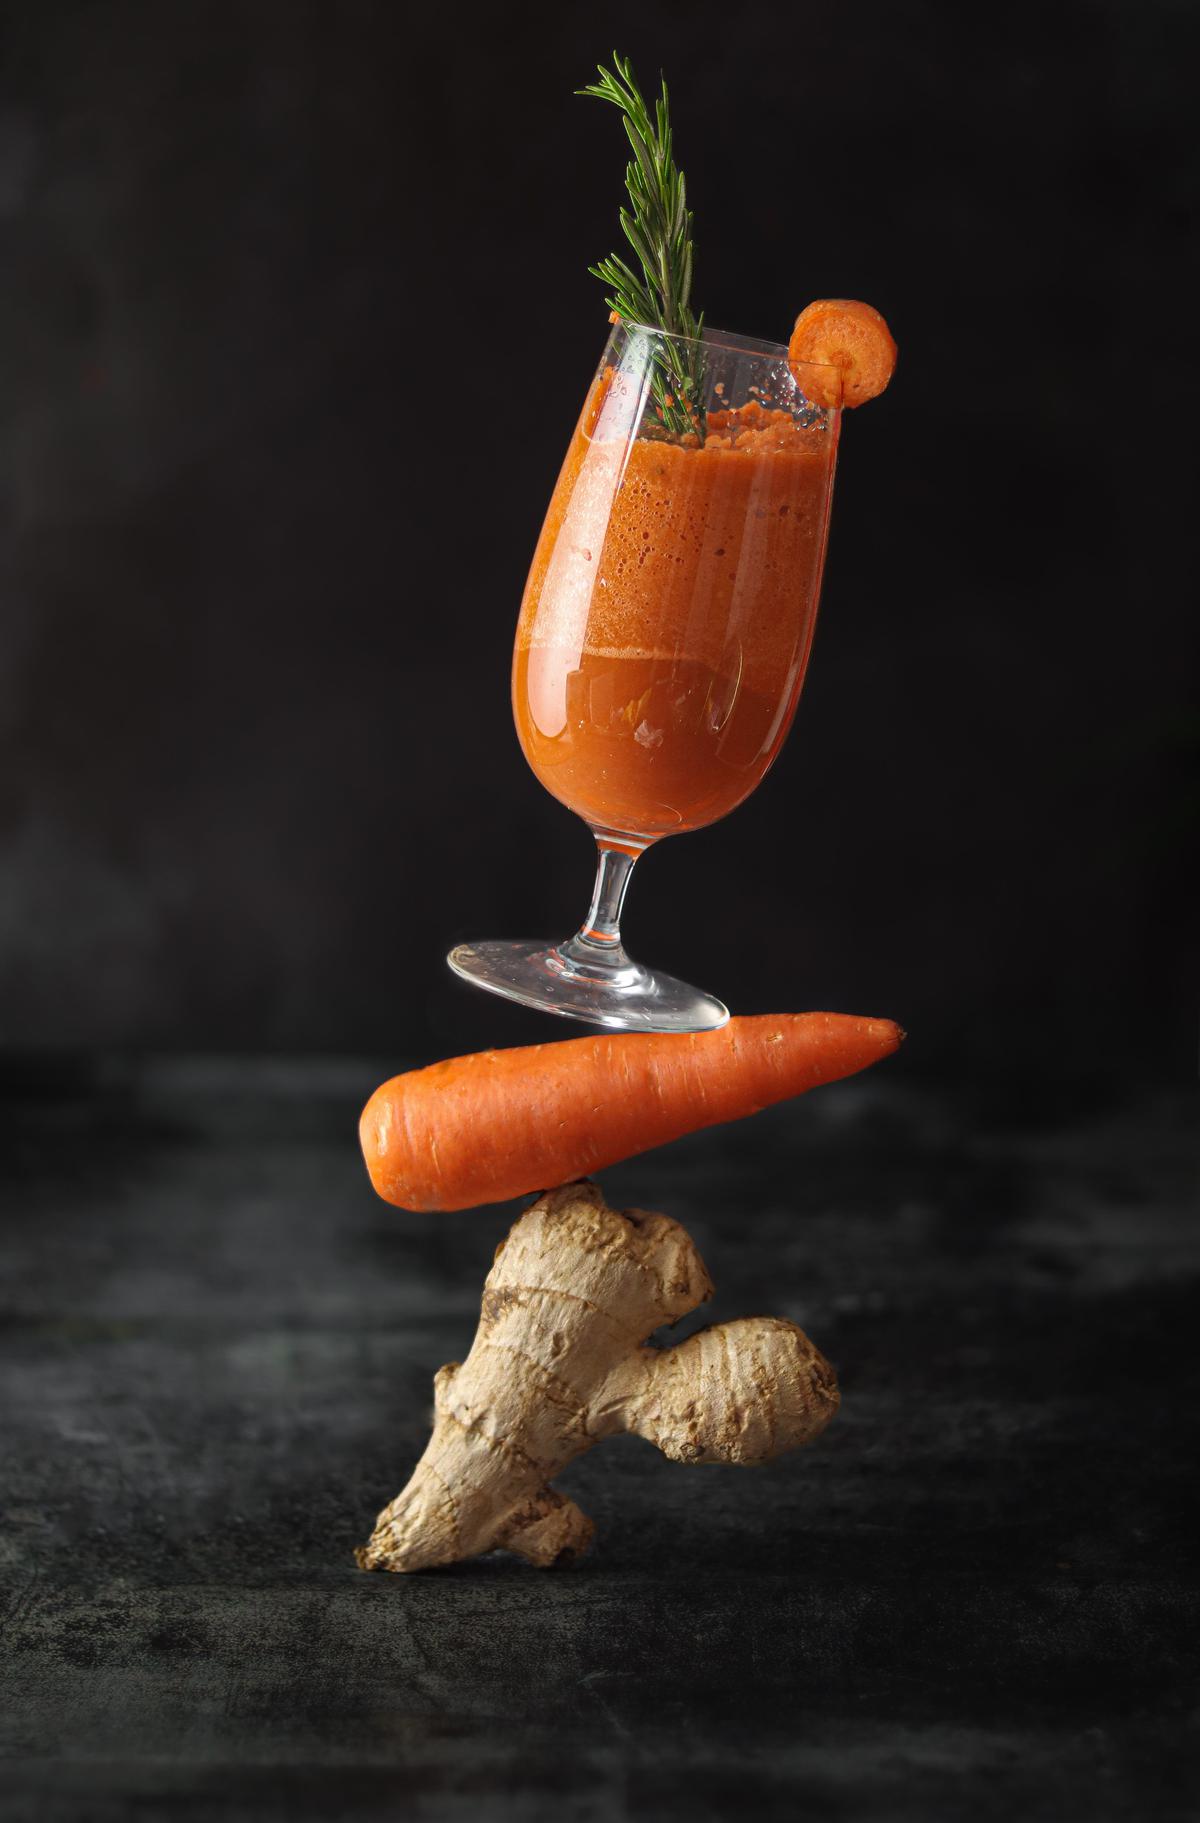 jugo de frutas | El jugo de zanahoria es el mejor aliado para aportarle al cuerpo todos los nutrientes necesarios.
Fuente: Pexels.